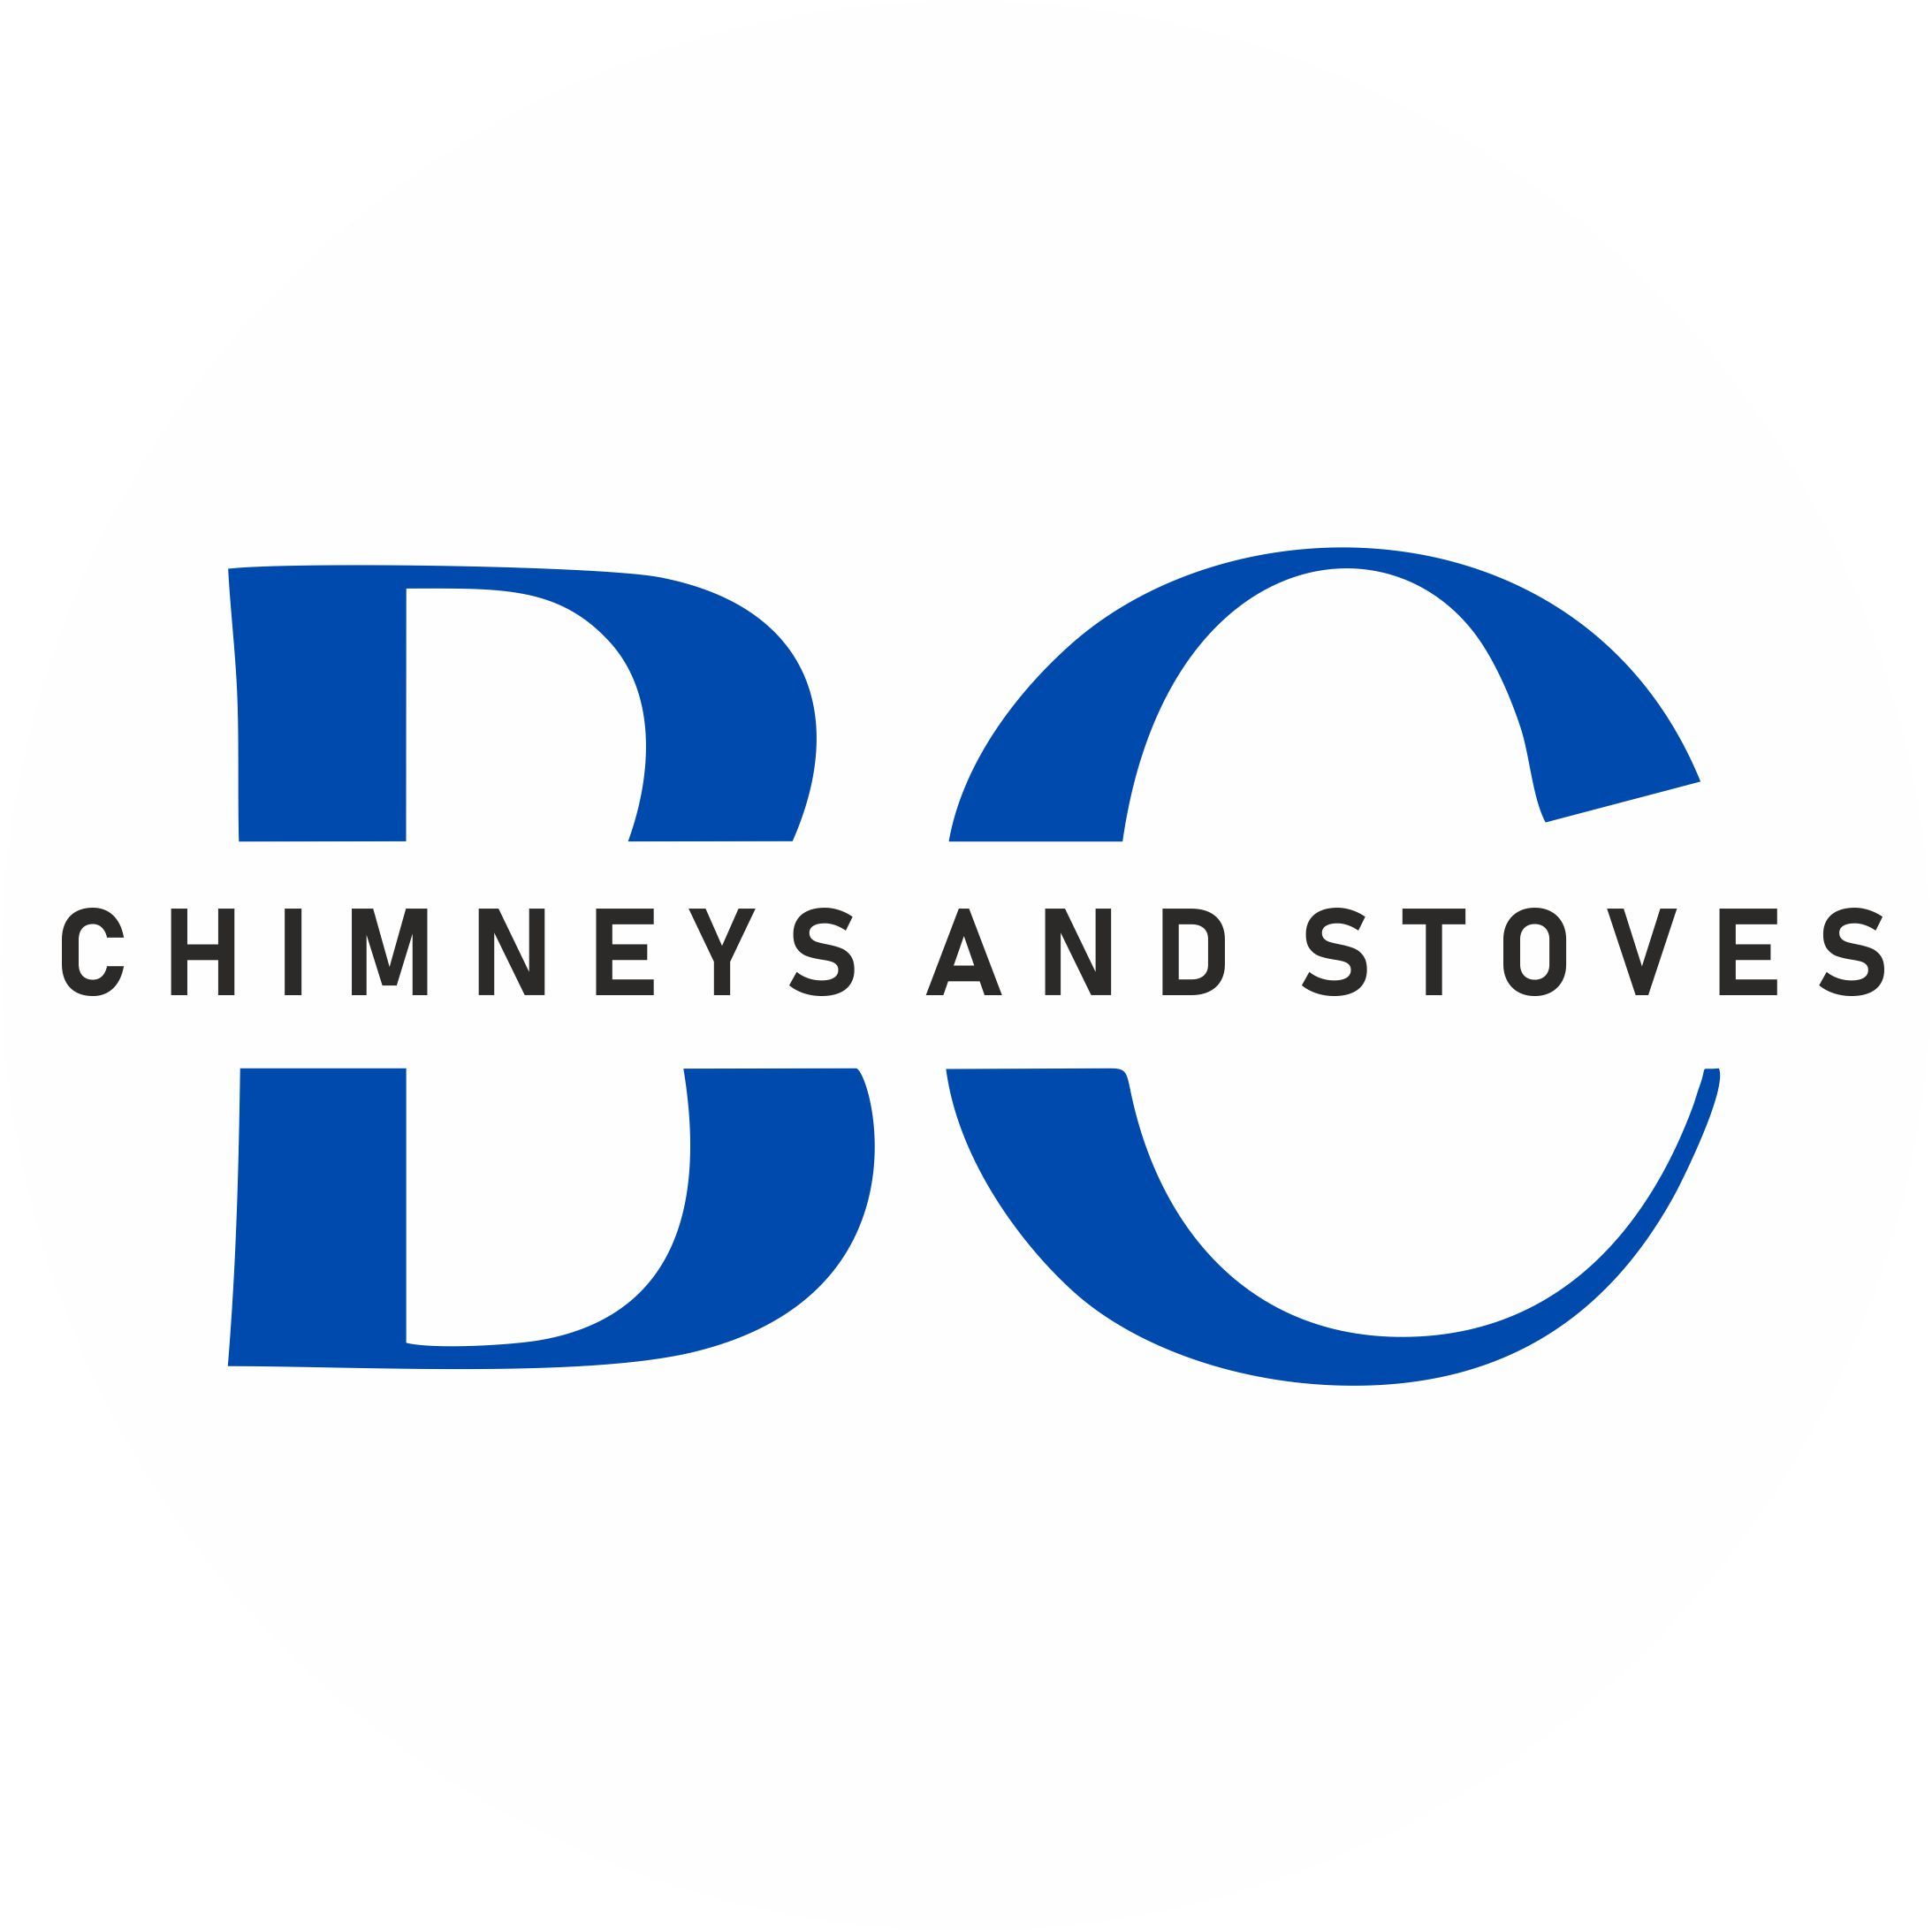 B C Chimneys & Stoves